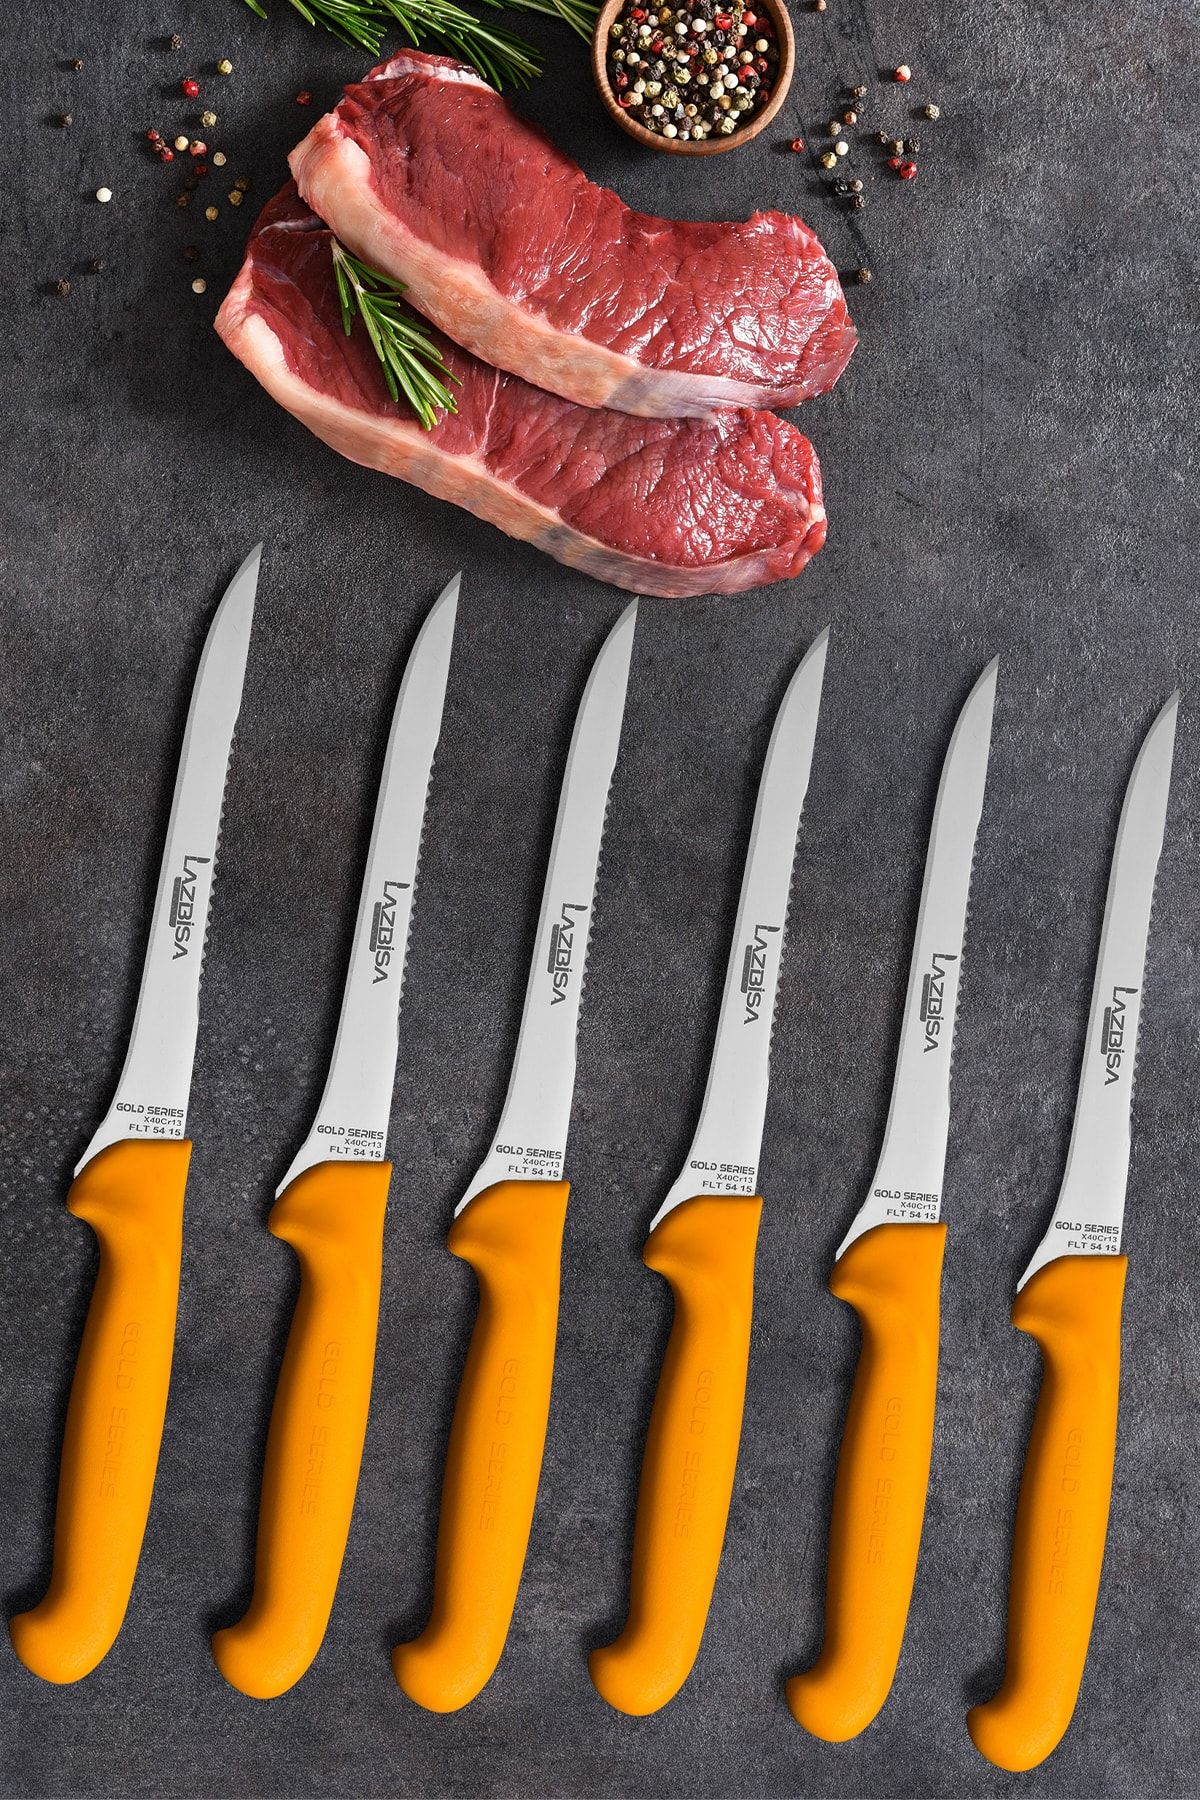 LAZBİSA Mutfak Bıçak Seti Fileto Steak Et Bıçak Restoran Et Kesme Doğrama Meyve Sebze Bıçak